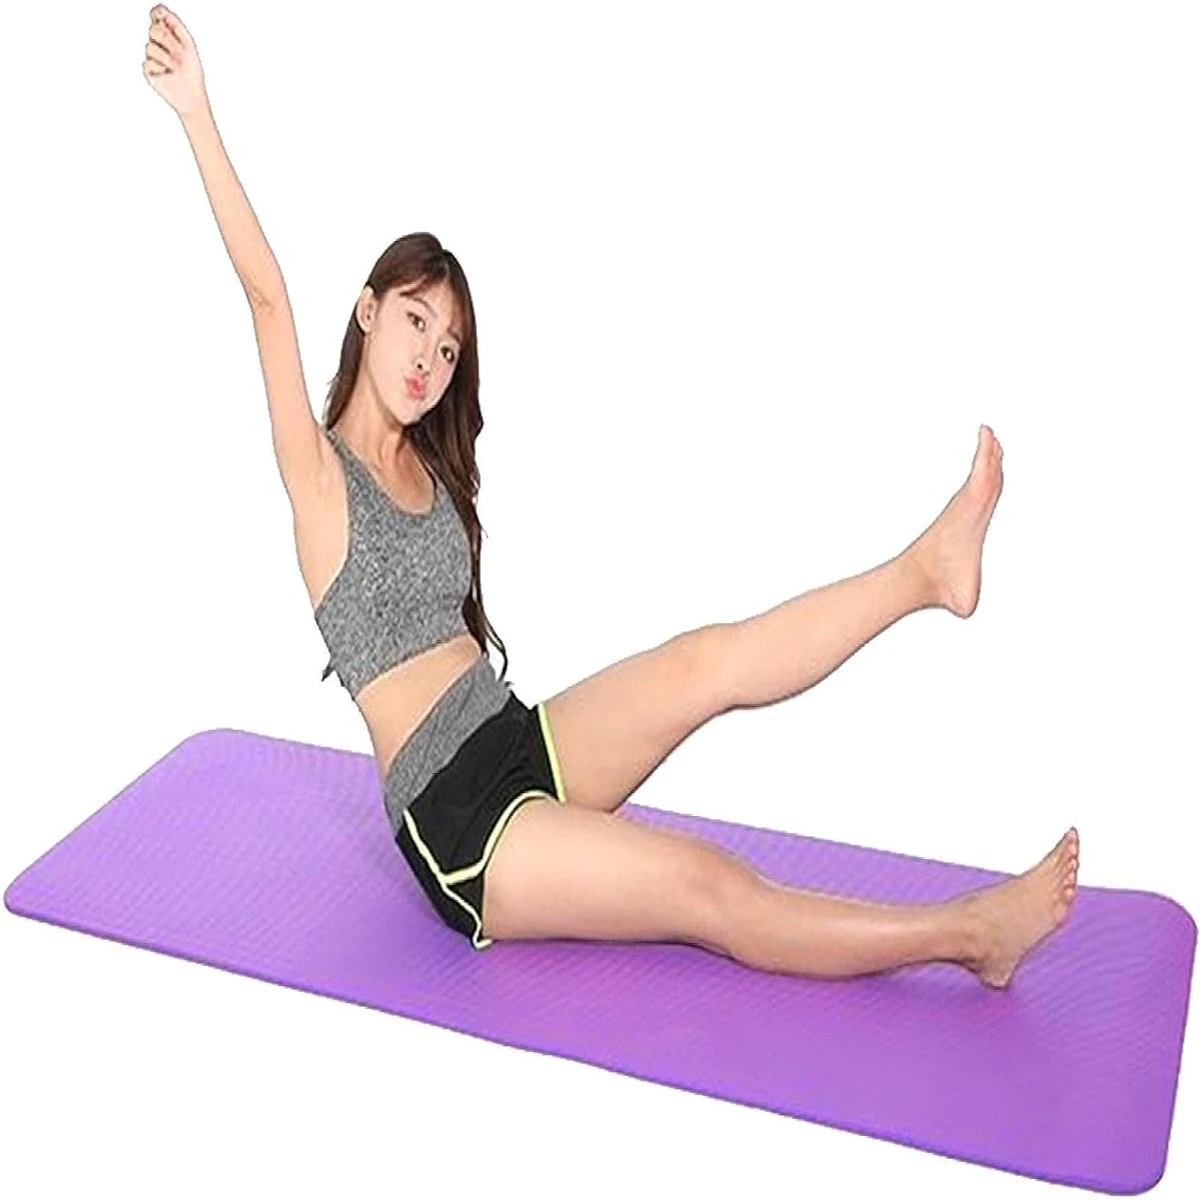 Yoga Plain mat - 2 feet x 6 feet